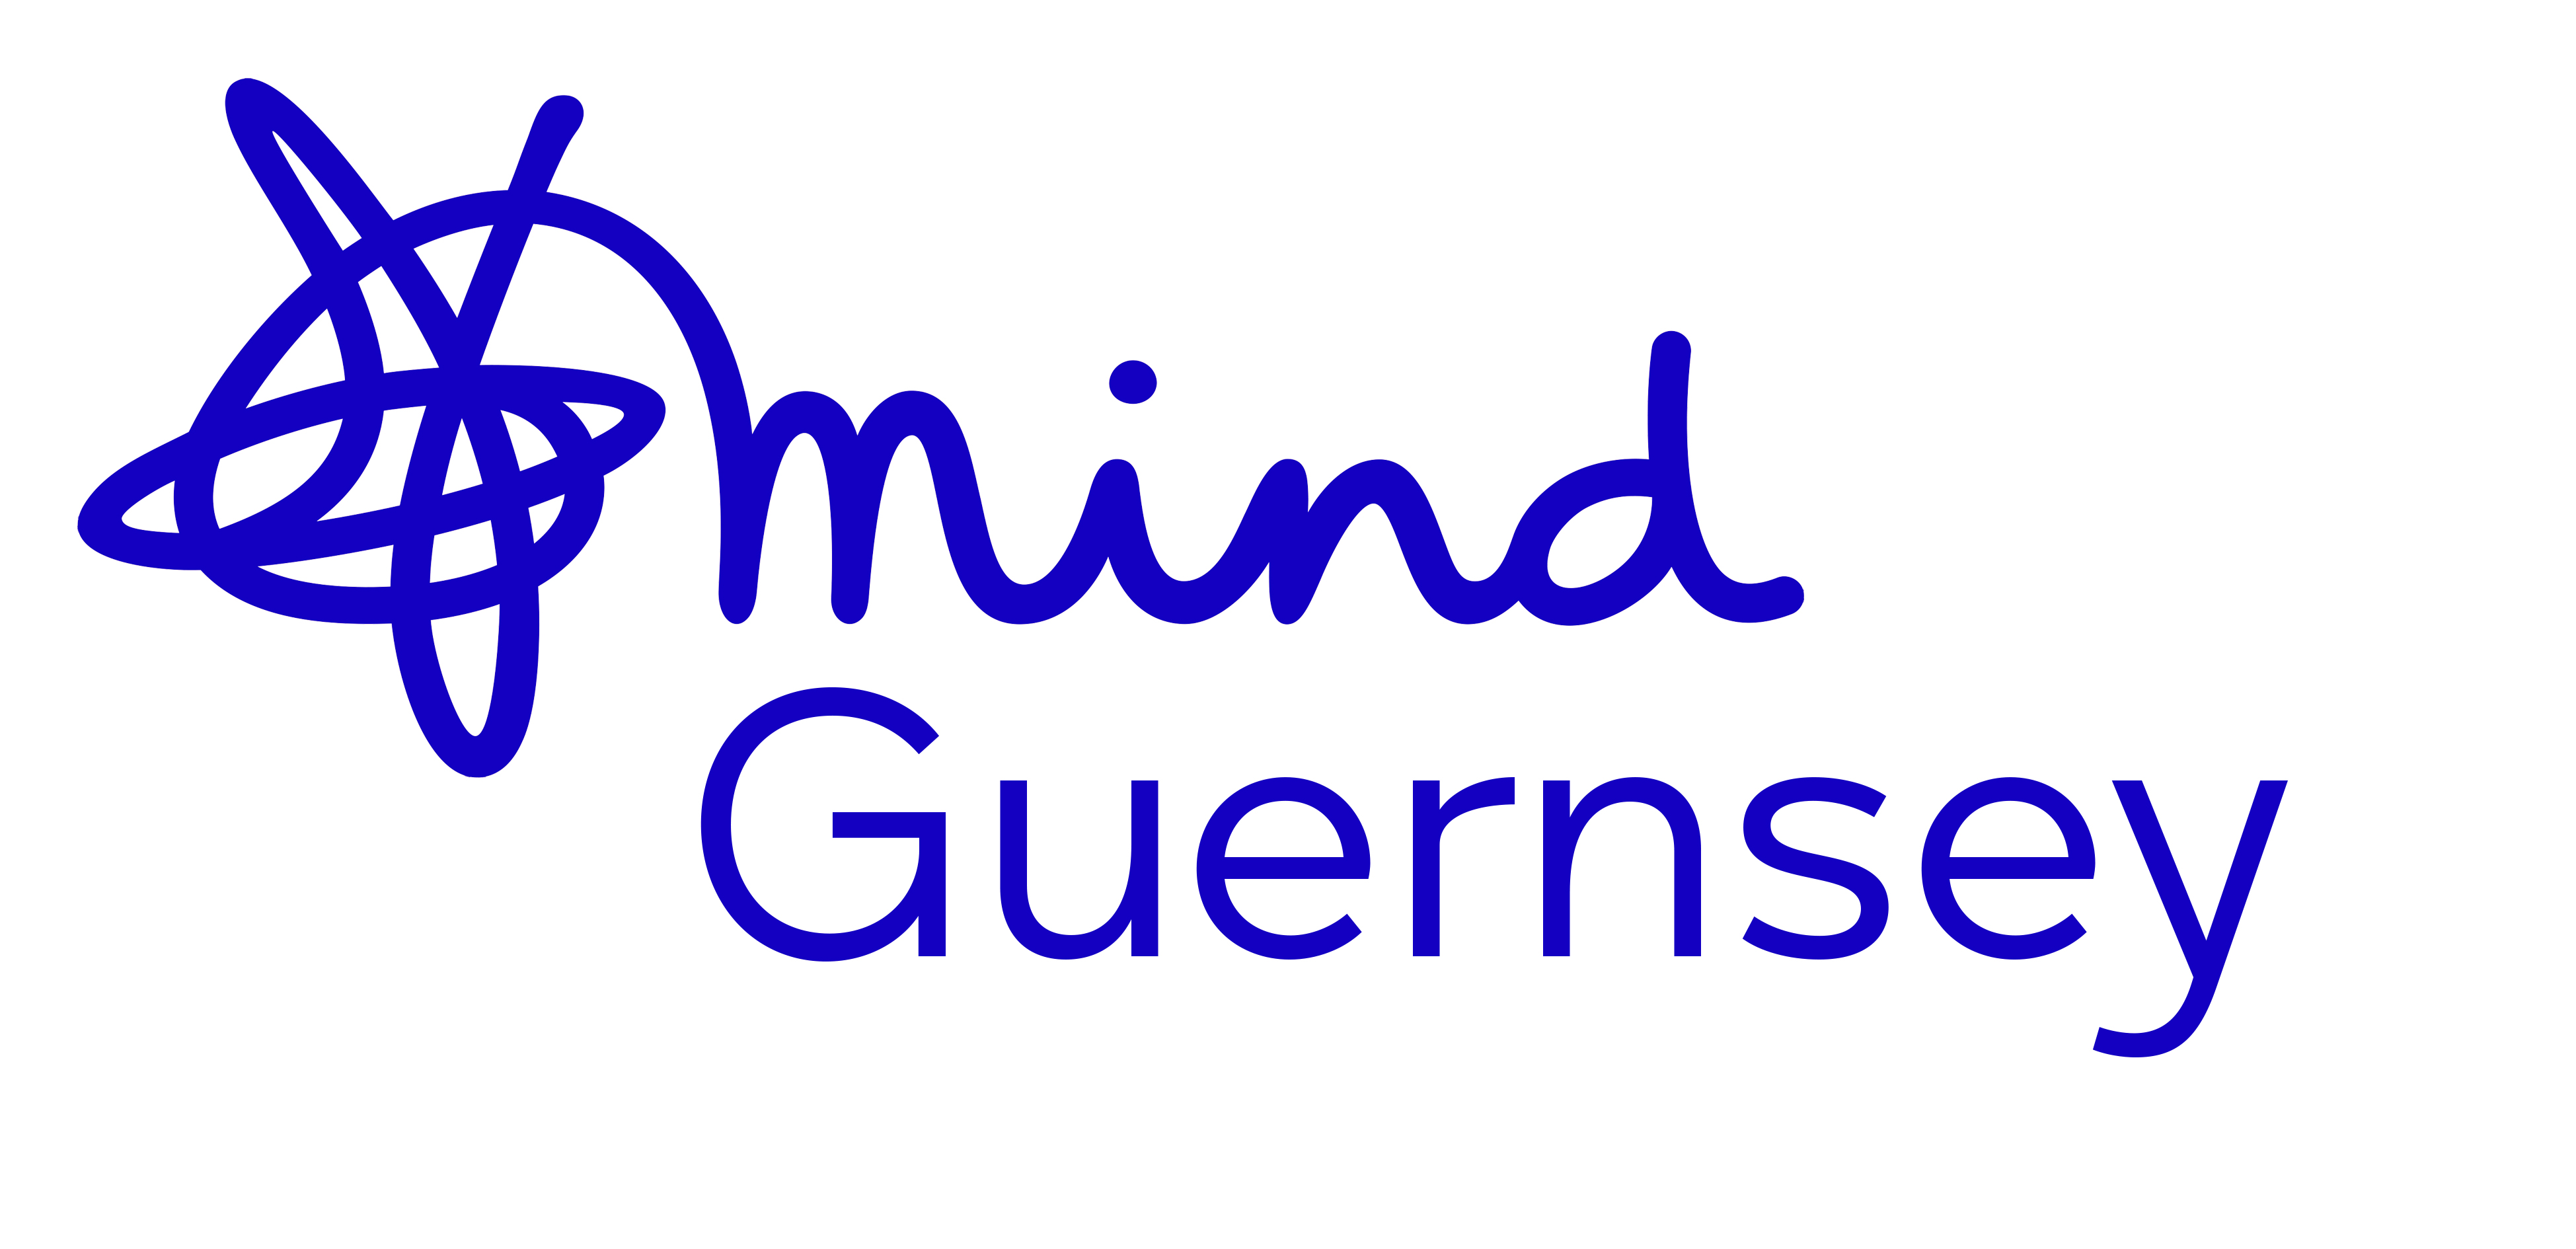 Guernsey Mind